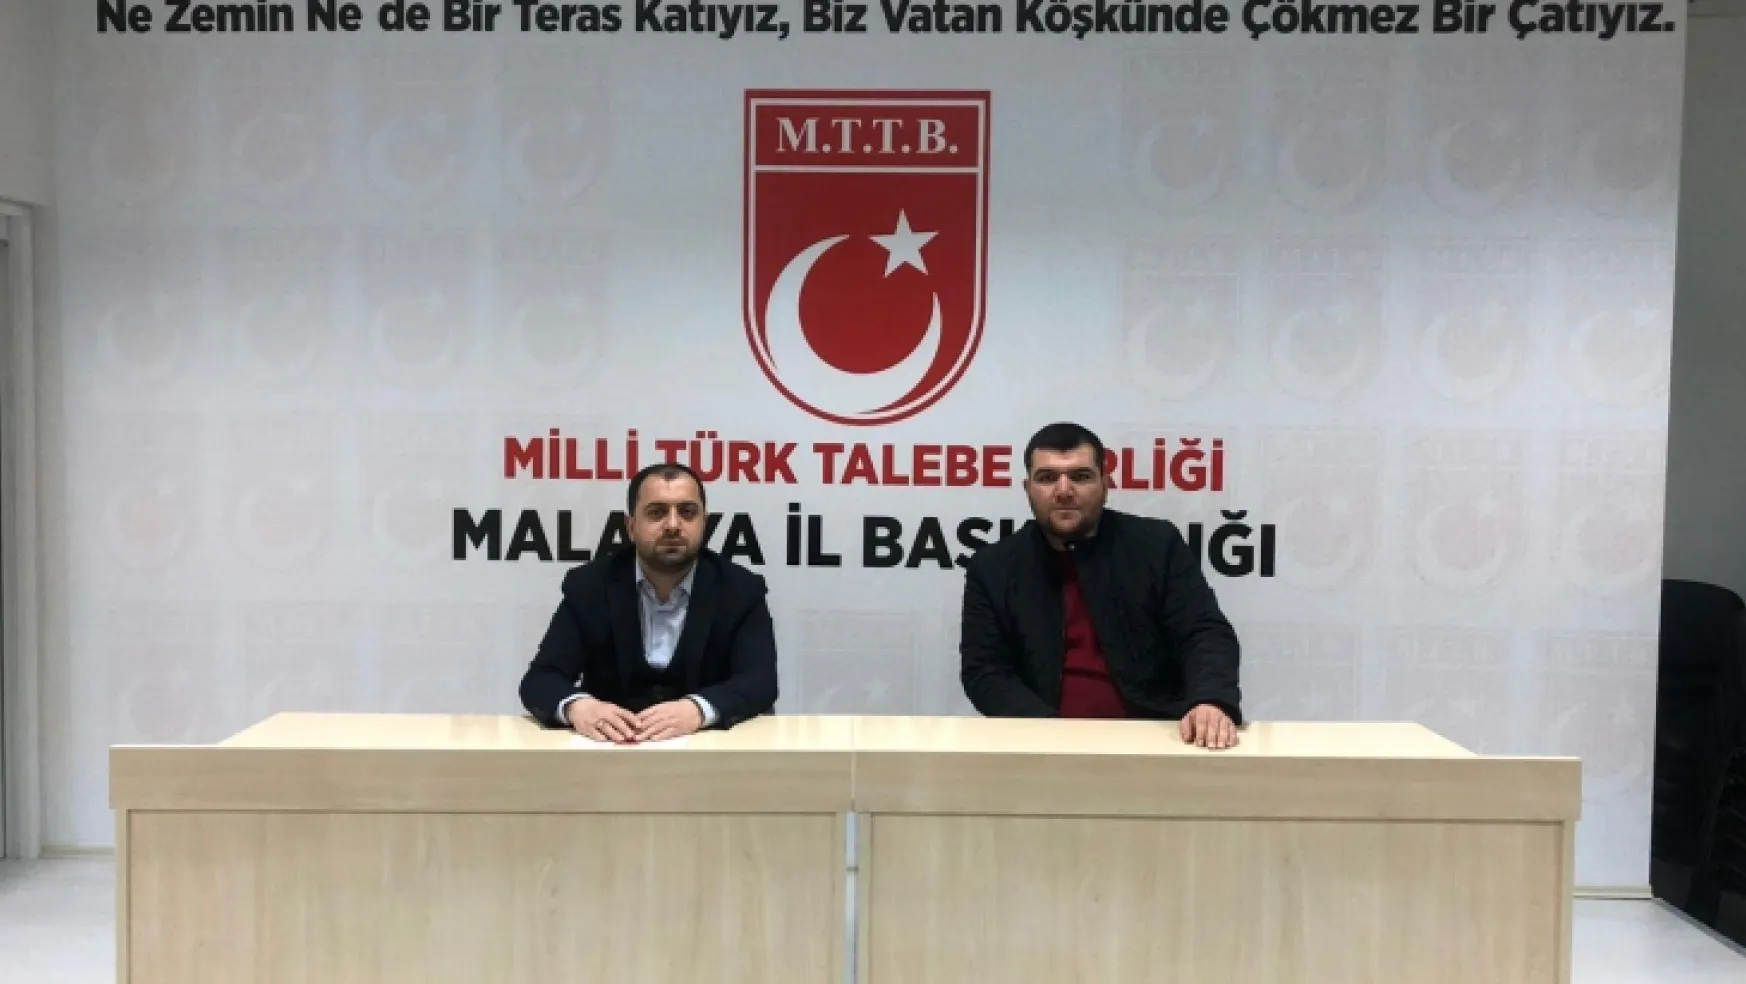 Milli Türk Talebe Birliği: 'Ülkemizin istikbaline kasteden bu melun terör örgütünü şiddetle kınıyoruz'